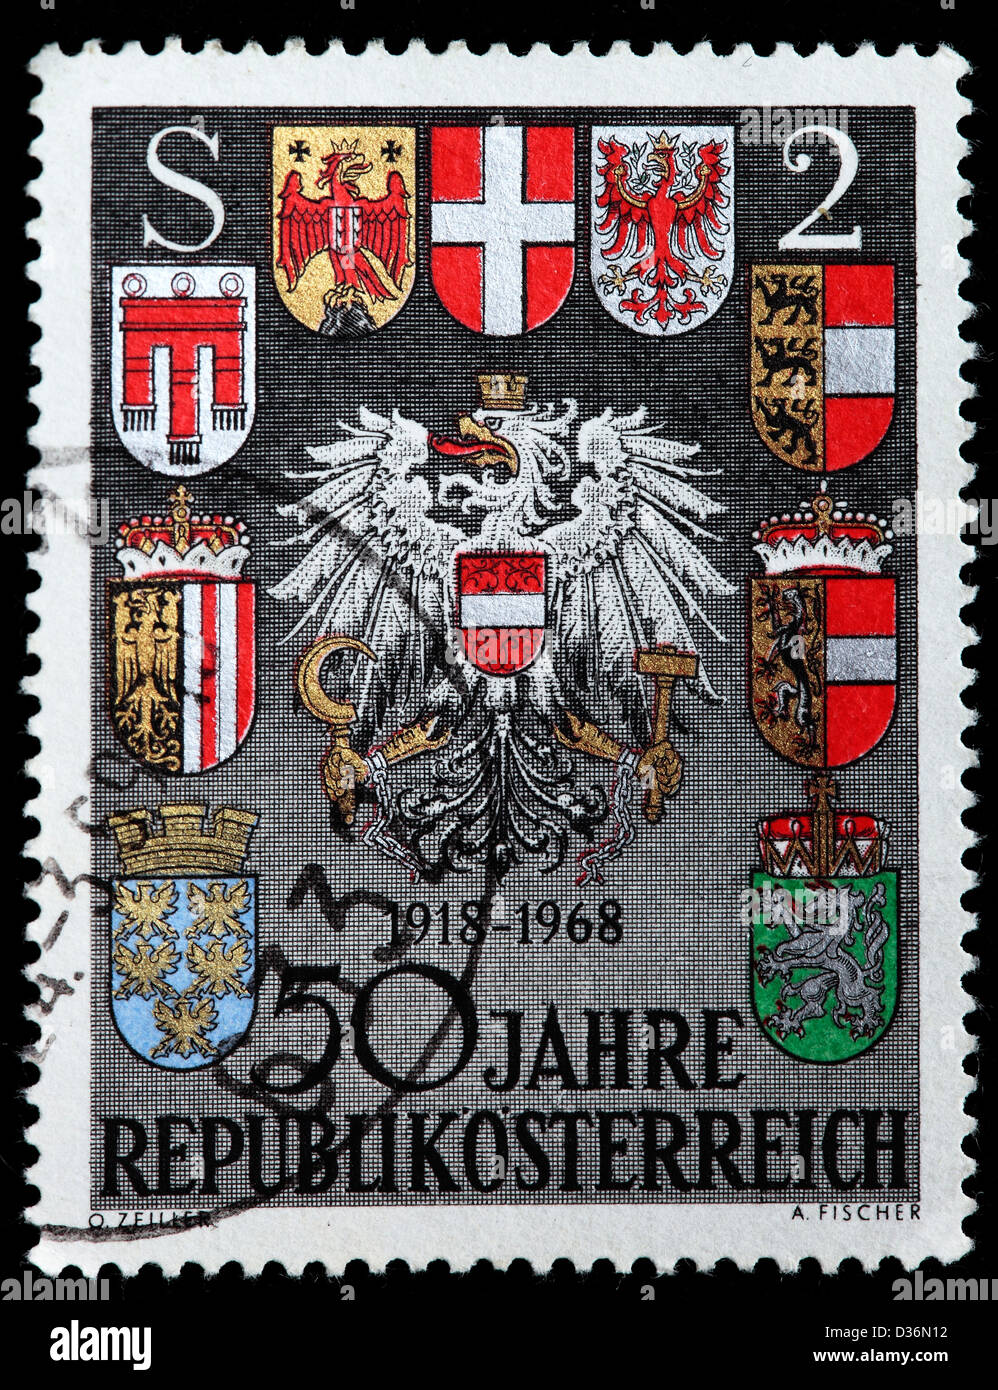 50e anniversaire de la République autrichienne, timbre-poste, l'Autriche, 1968 Banque D'Images